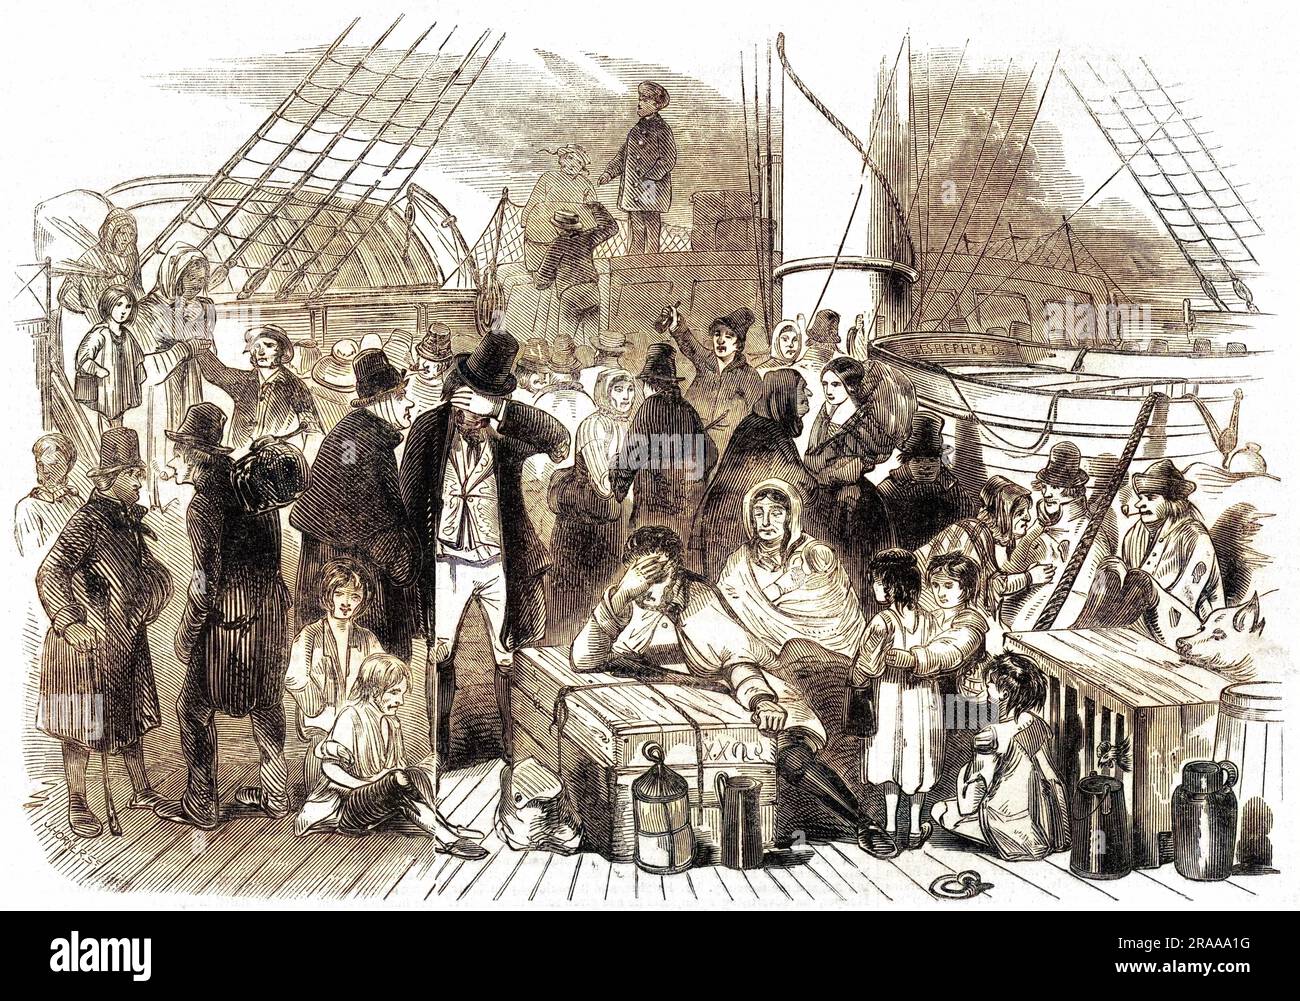 Irische Emigranten auf dem Deck eines Schiffes. Das Bild wird veröffentlicht mit Bezug auf eine schreckliche Kollision auf der Mersey zwischen zwei Dampfern, der Sea Nymph und dem Rambler, die zu einem gewaltigen Verlust von Menschenleben führte. Datum: 1846 Stockfoto